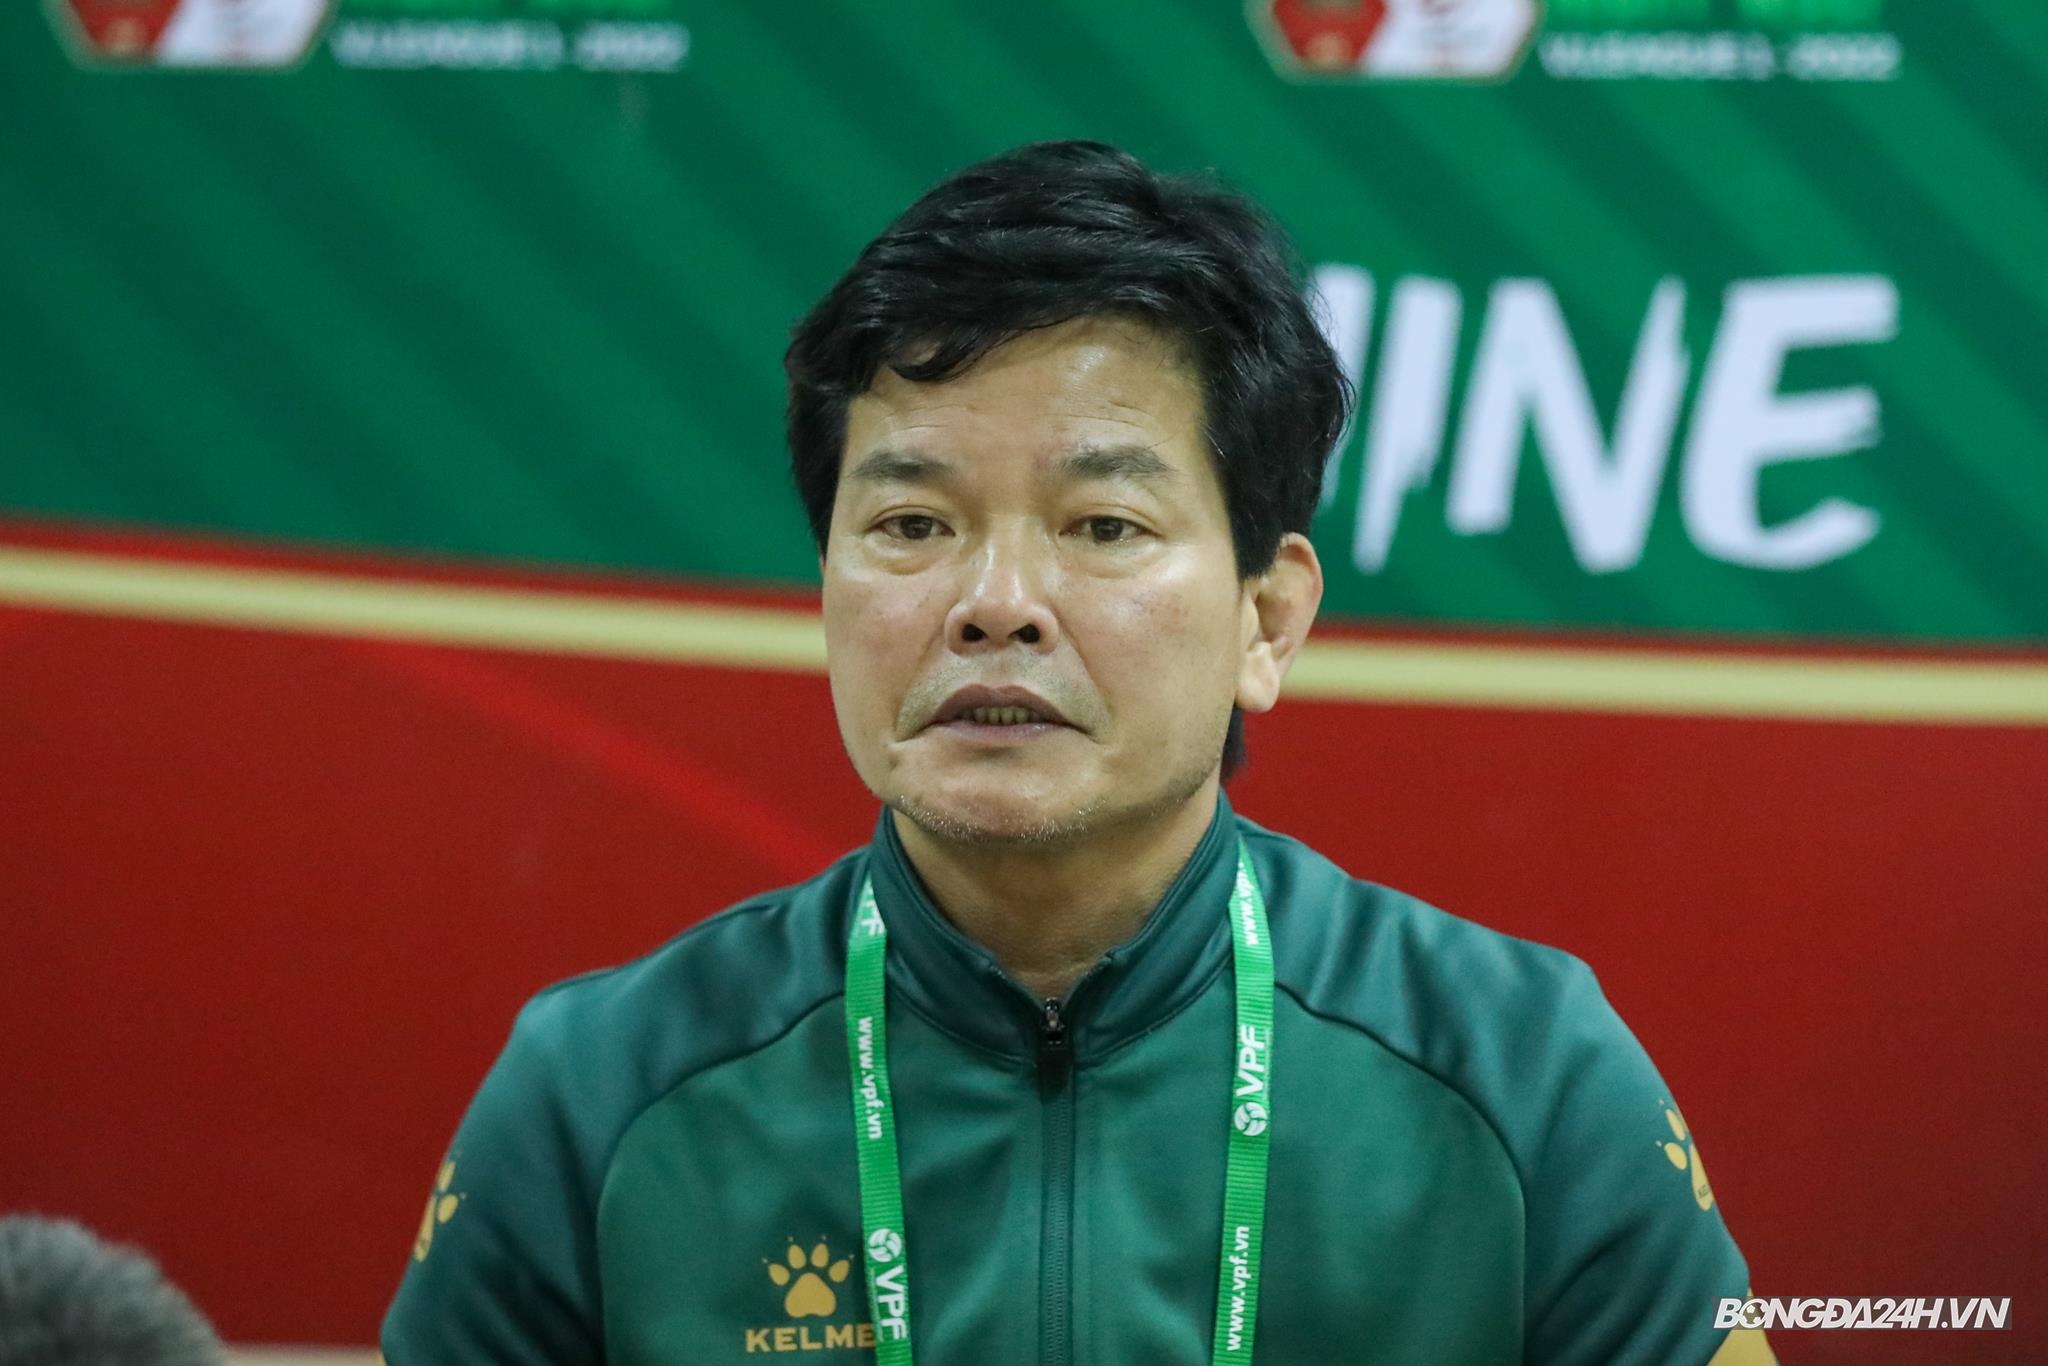 HLV Nguyễn Văn Sỹ nói gì về kế hoạch chiêu mộ cầu thủ của Hà Nội 1